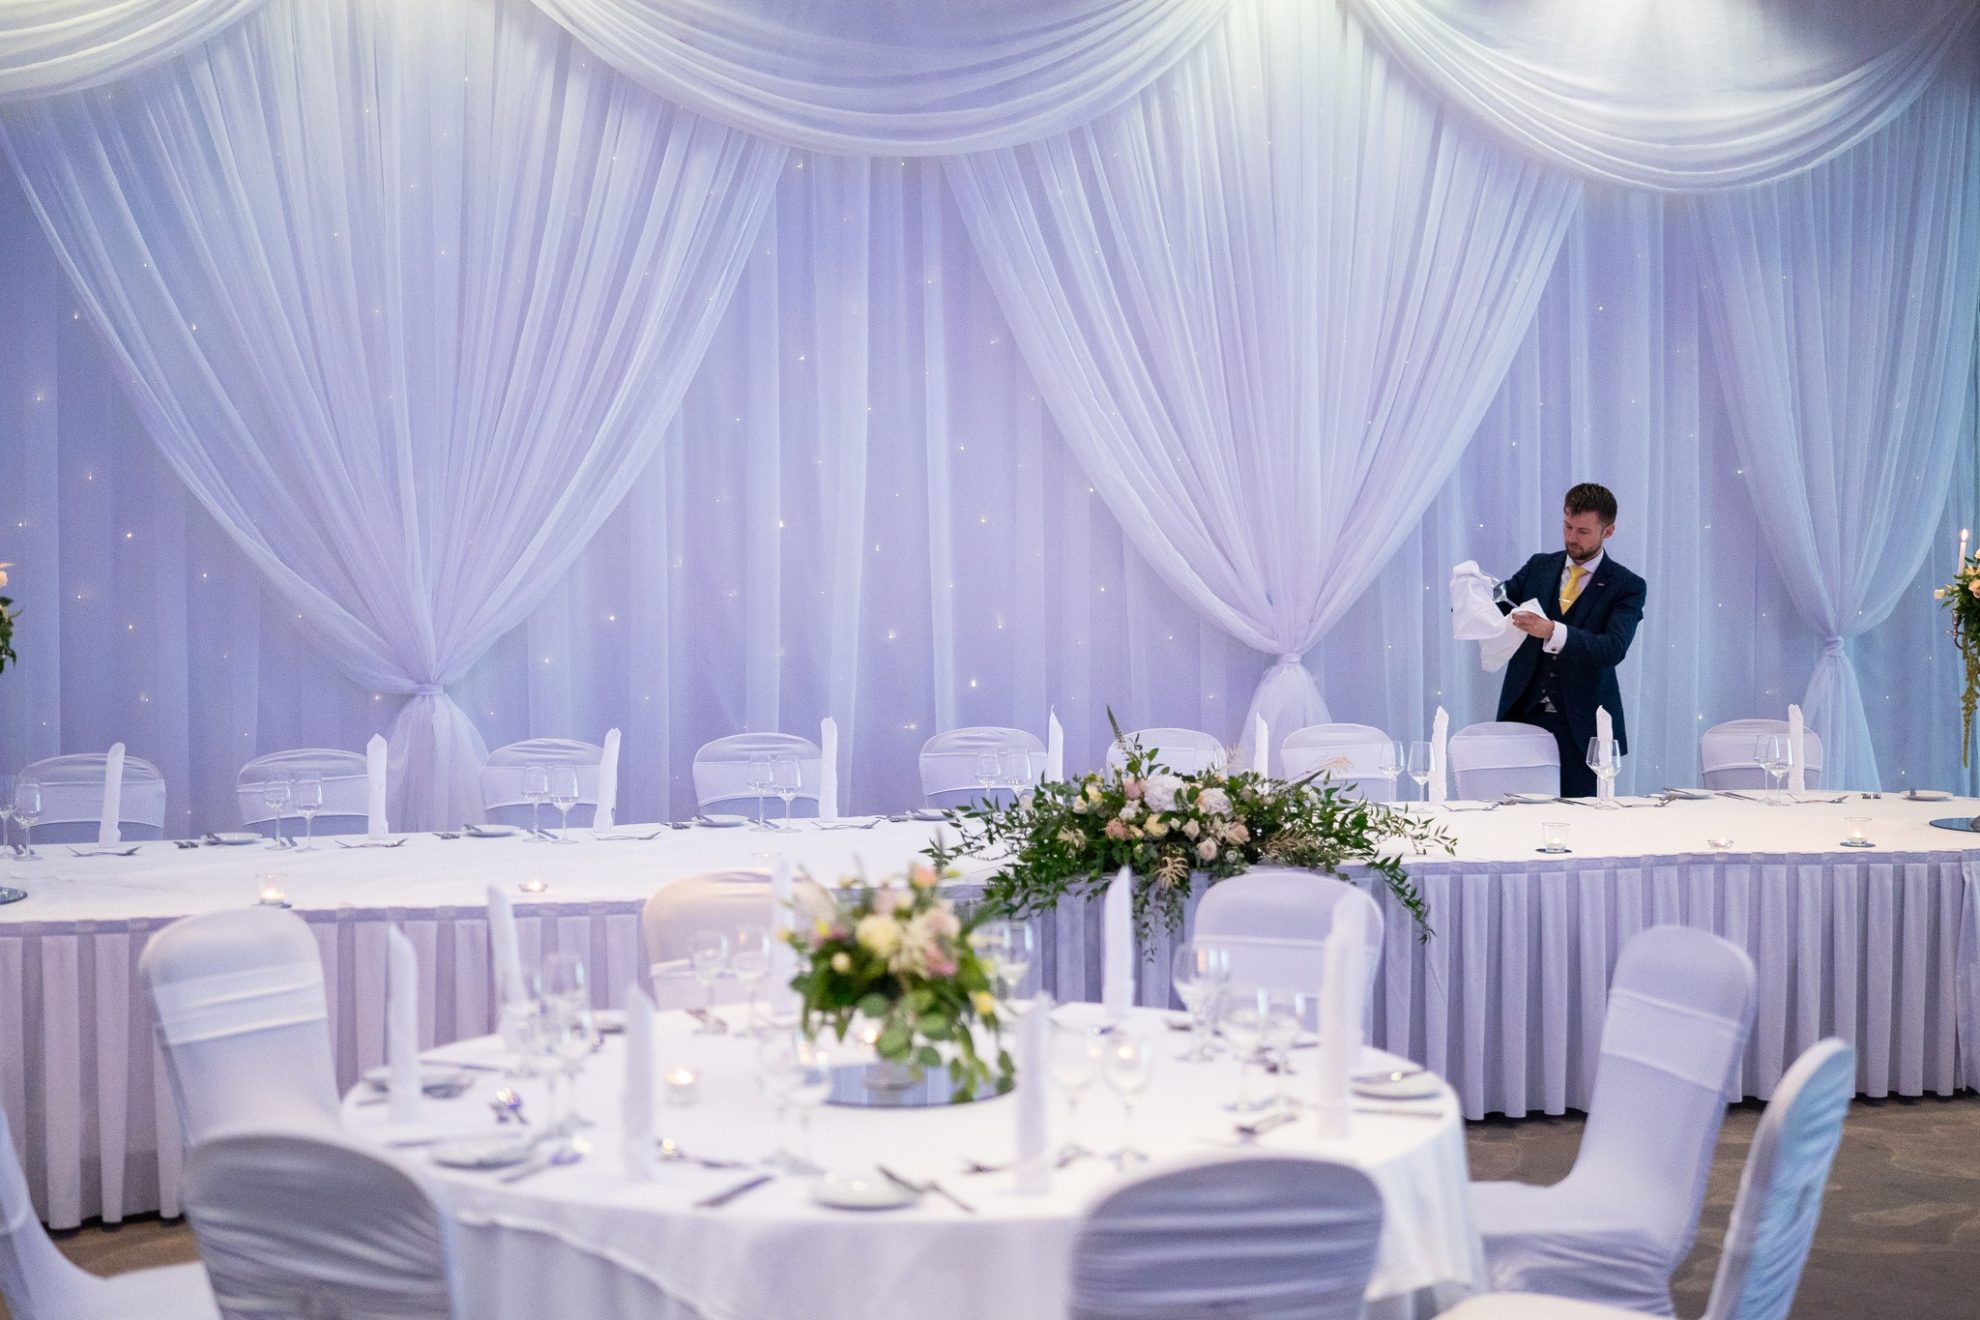 Wedding Venues In County Westmeath - Radisson Blu Athlone inside